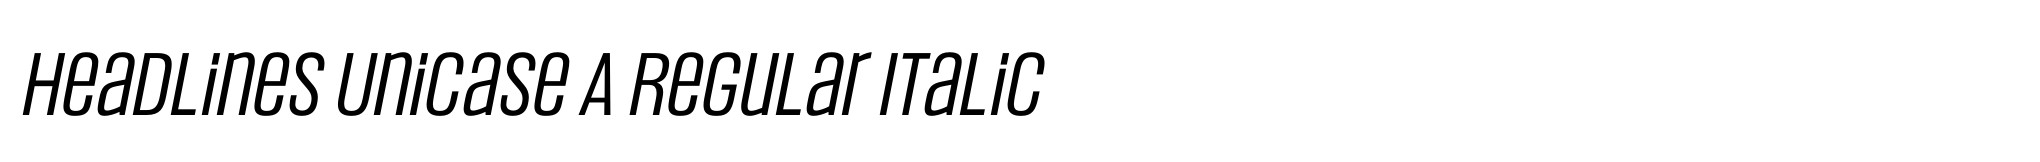 Headlines Unicase A Regular Italic image